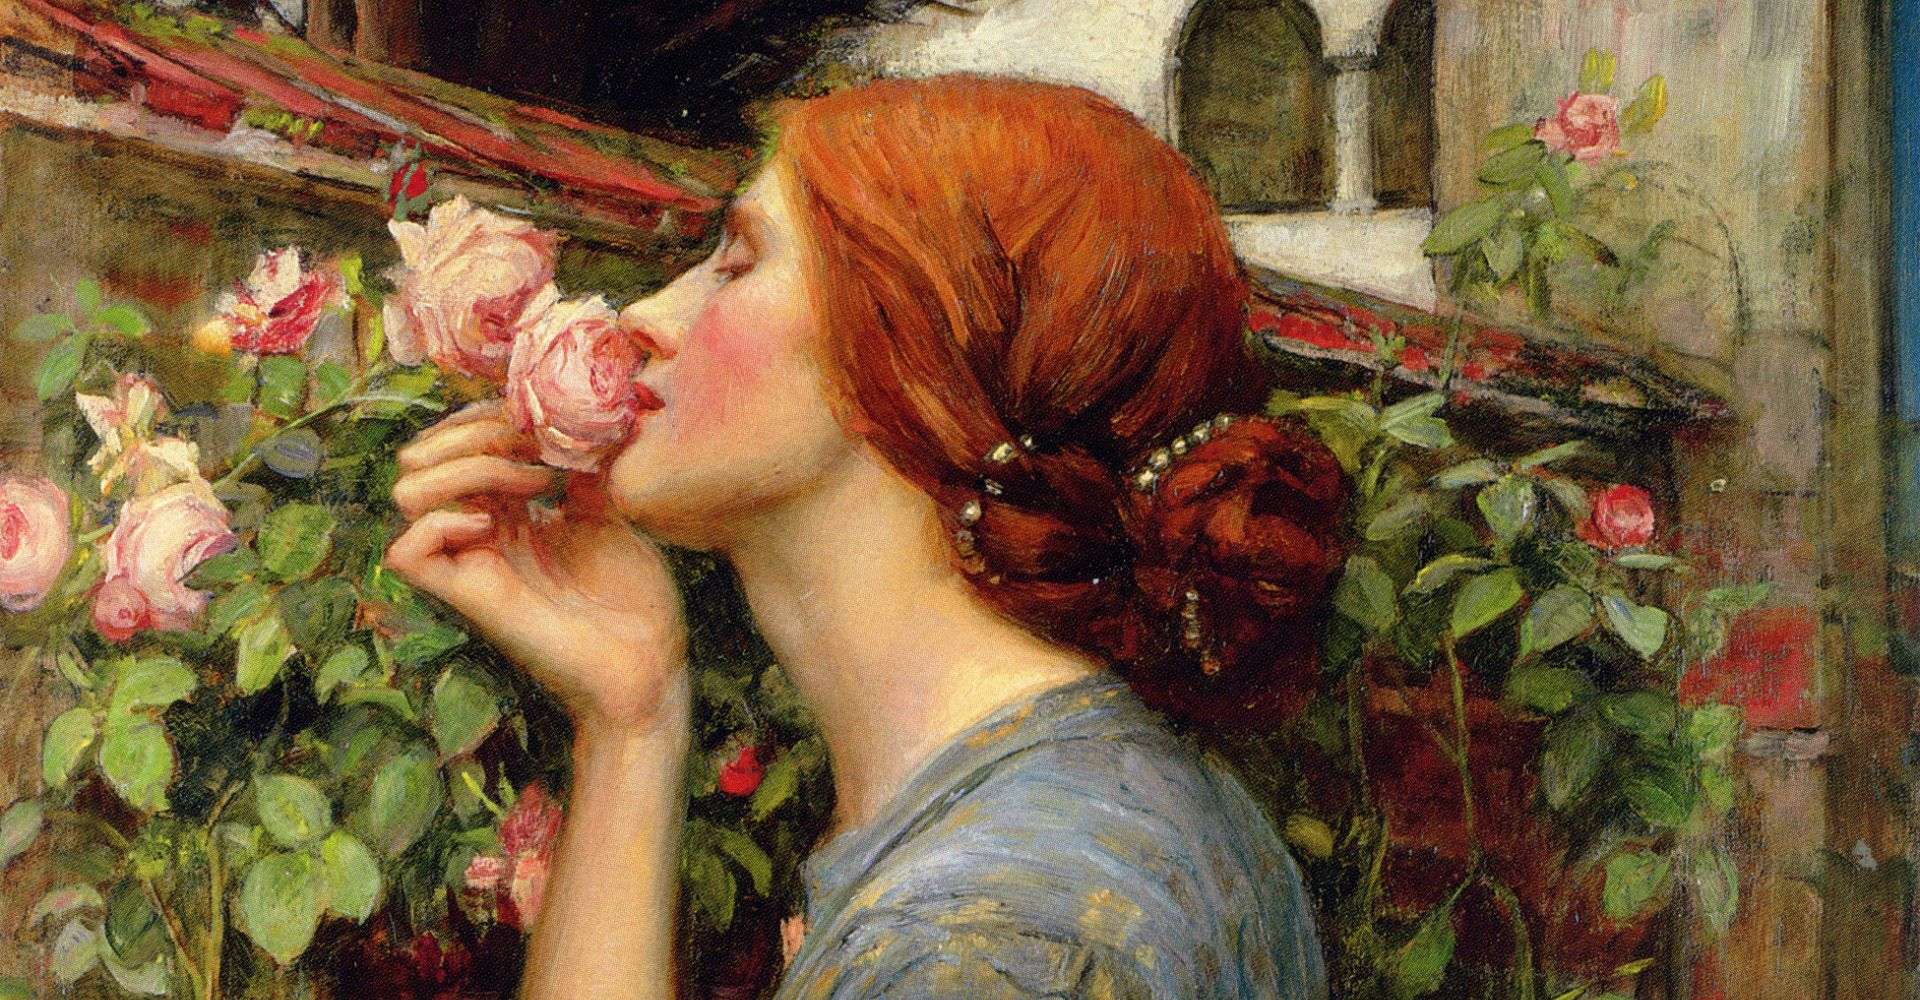 Un dettaglio del quadro "Mia dolce rosa", noto anche come "L'anima della rosa" o "Lo spirito della rosa", di John William Waterhouse